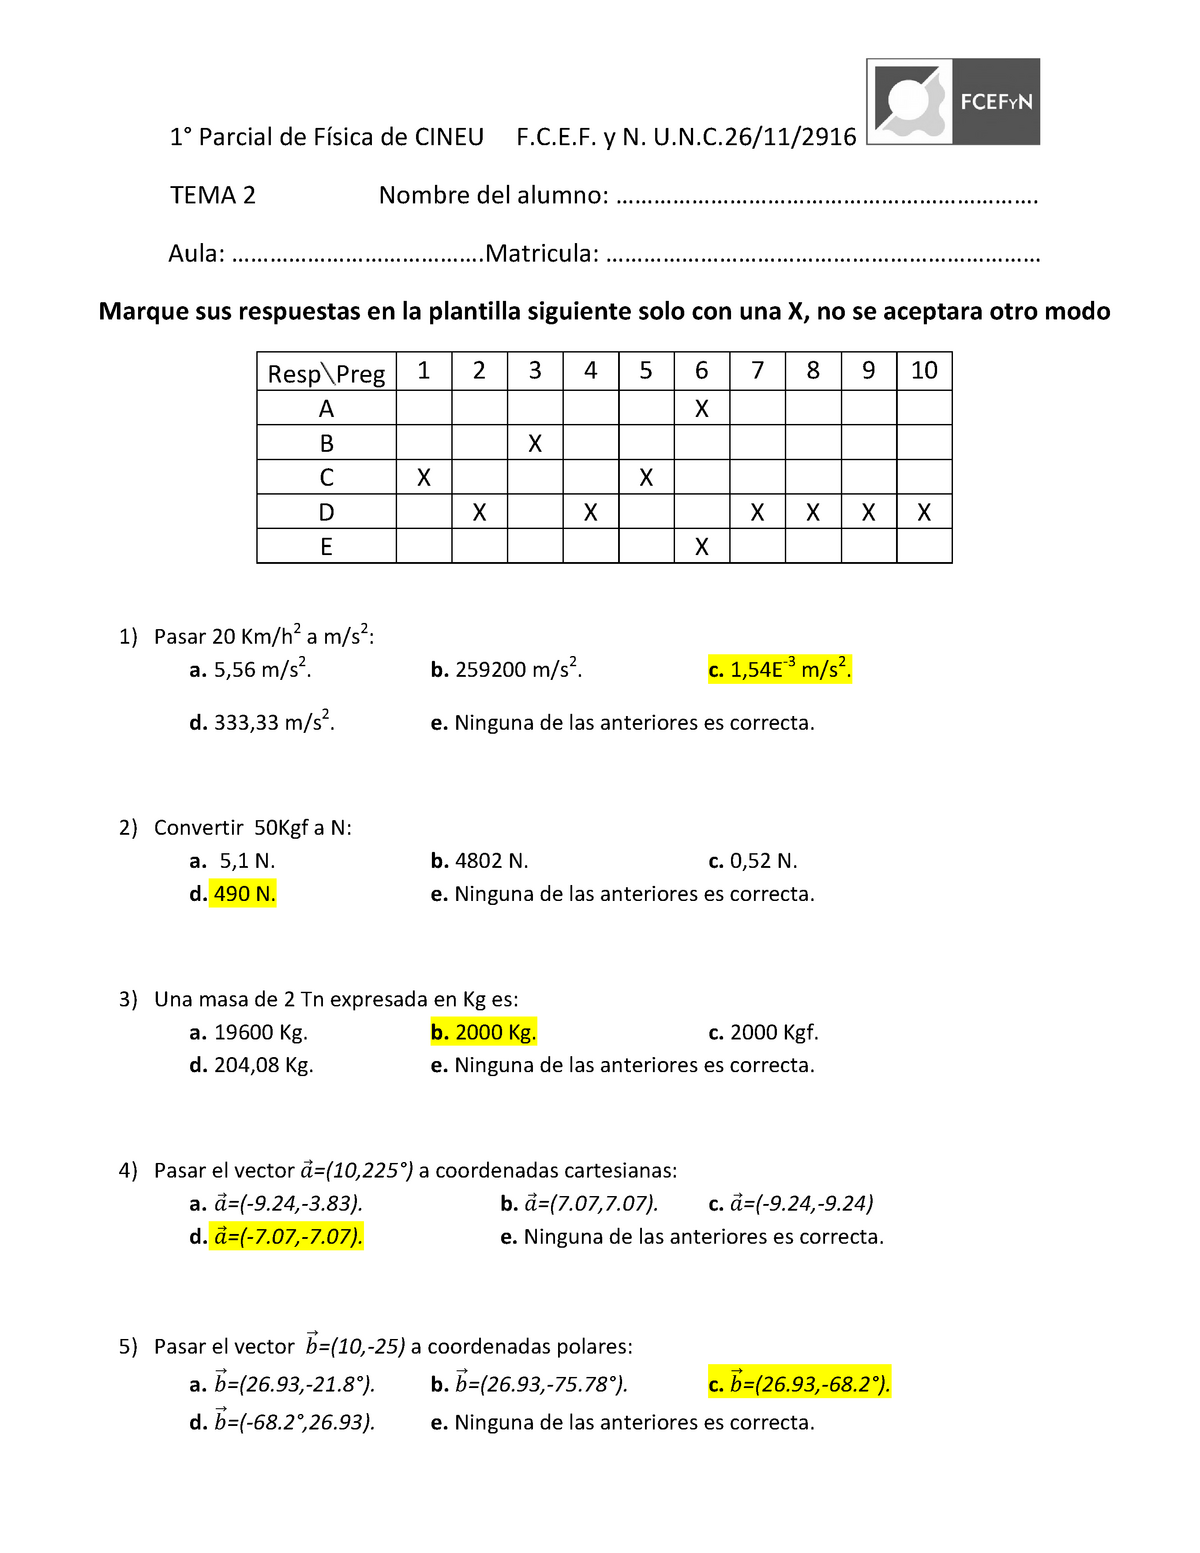 Examen Mayo 18 Preguntas Y Respuestas Studocu